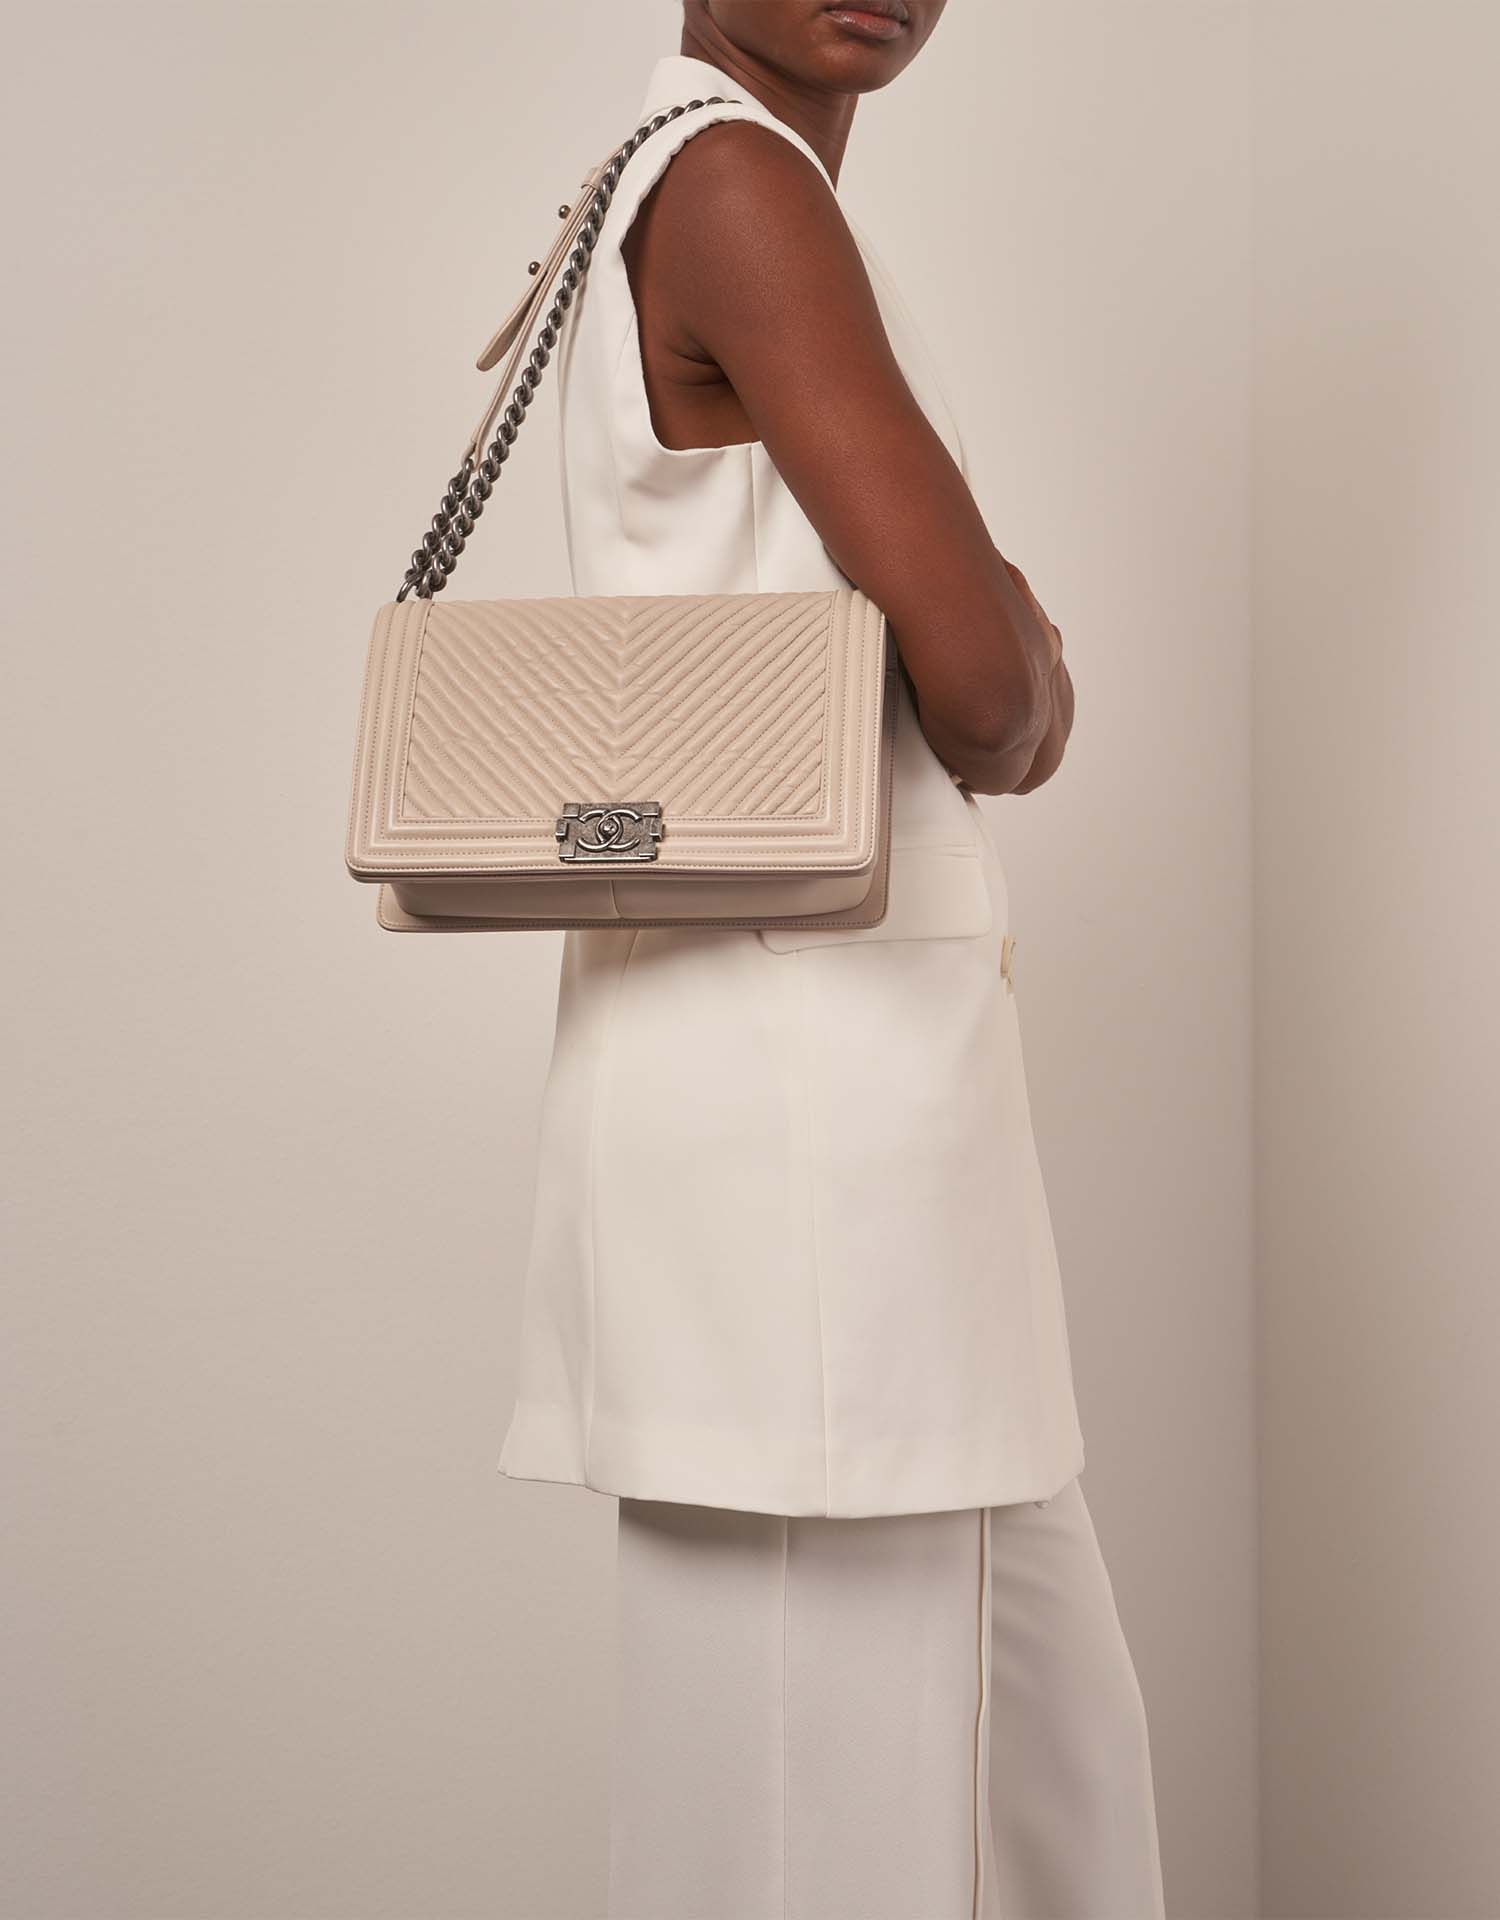 Chanel Boy NewMedium Beige on Model | Verkaufen Sie Ihre Designer-Tasche auf Saclab.com